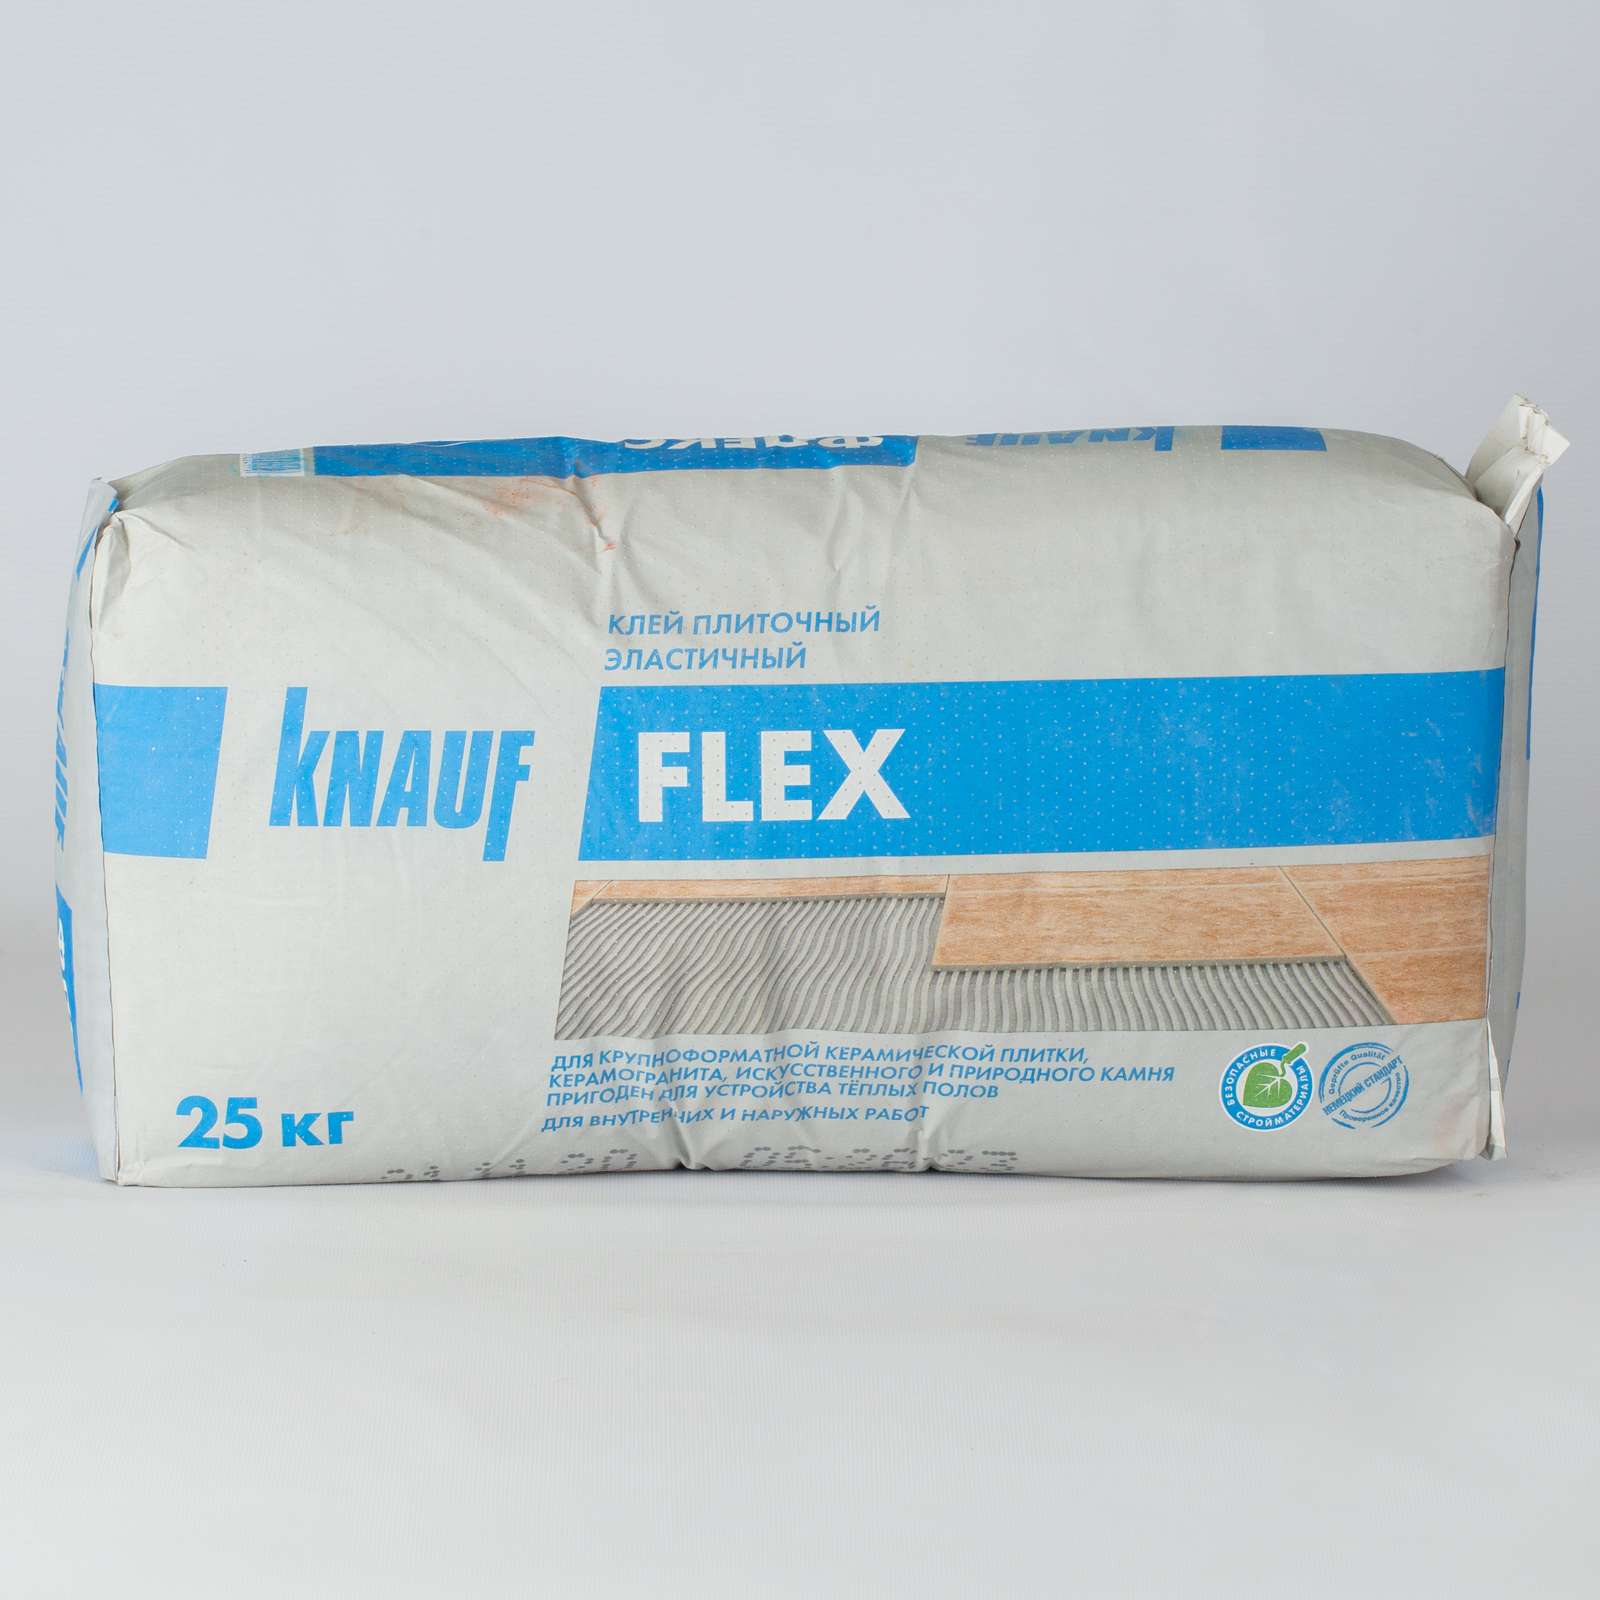 Клей кнауф флекс. Клей для плитки Кнауф Флекс 25 кг. Флекс Knauf - клей плиточный 25кг с2s1. Кнауф Флекс 25кг клей для керамогранита. Клей плиточный Knauf Flex эластичный 25.